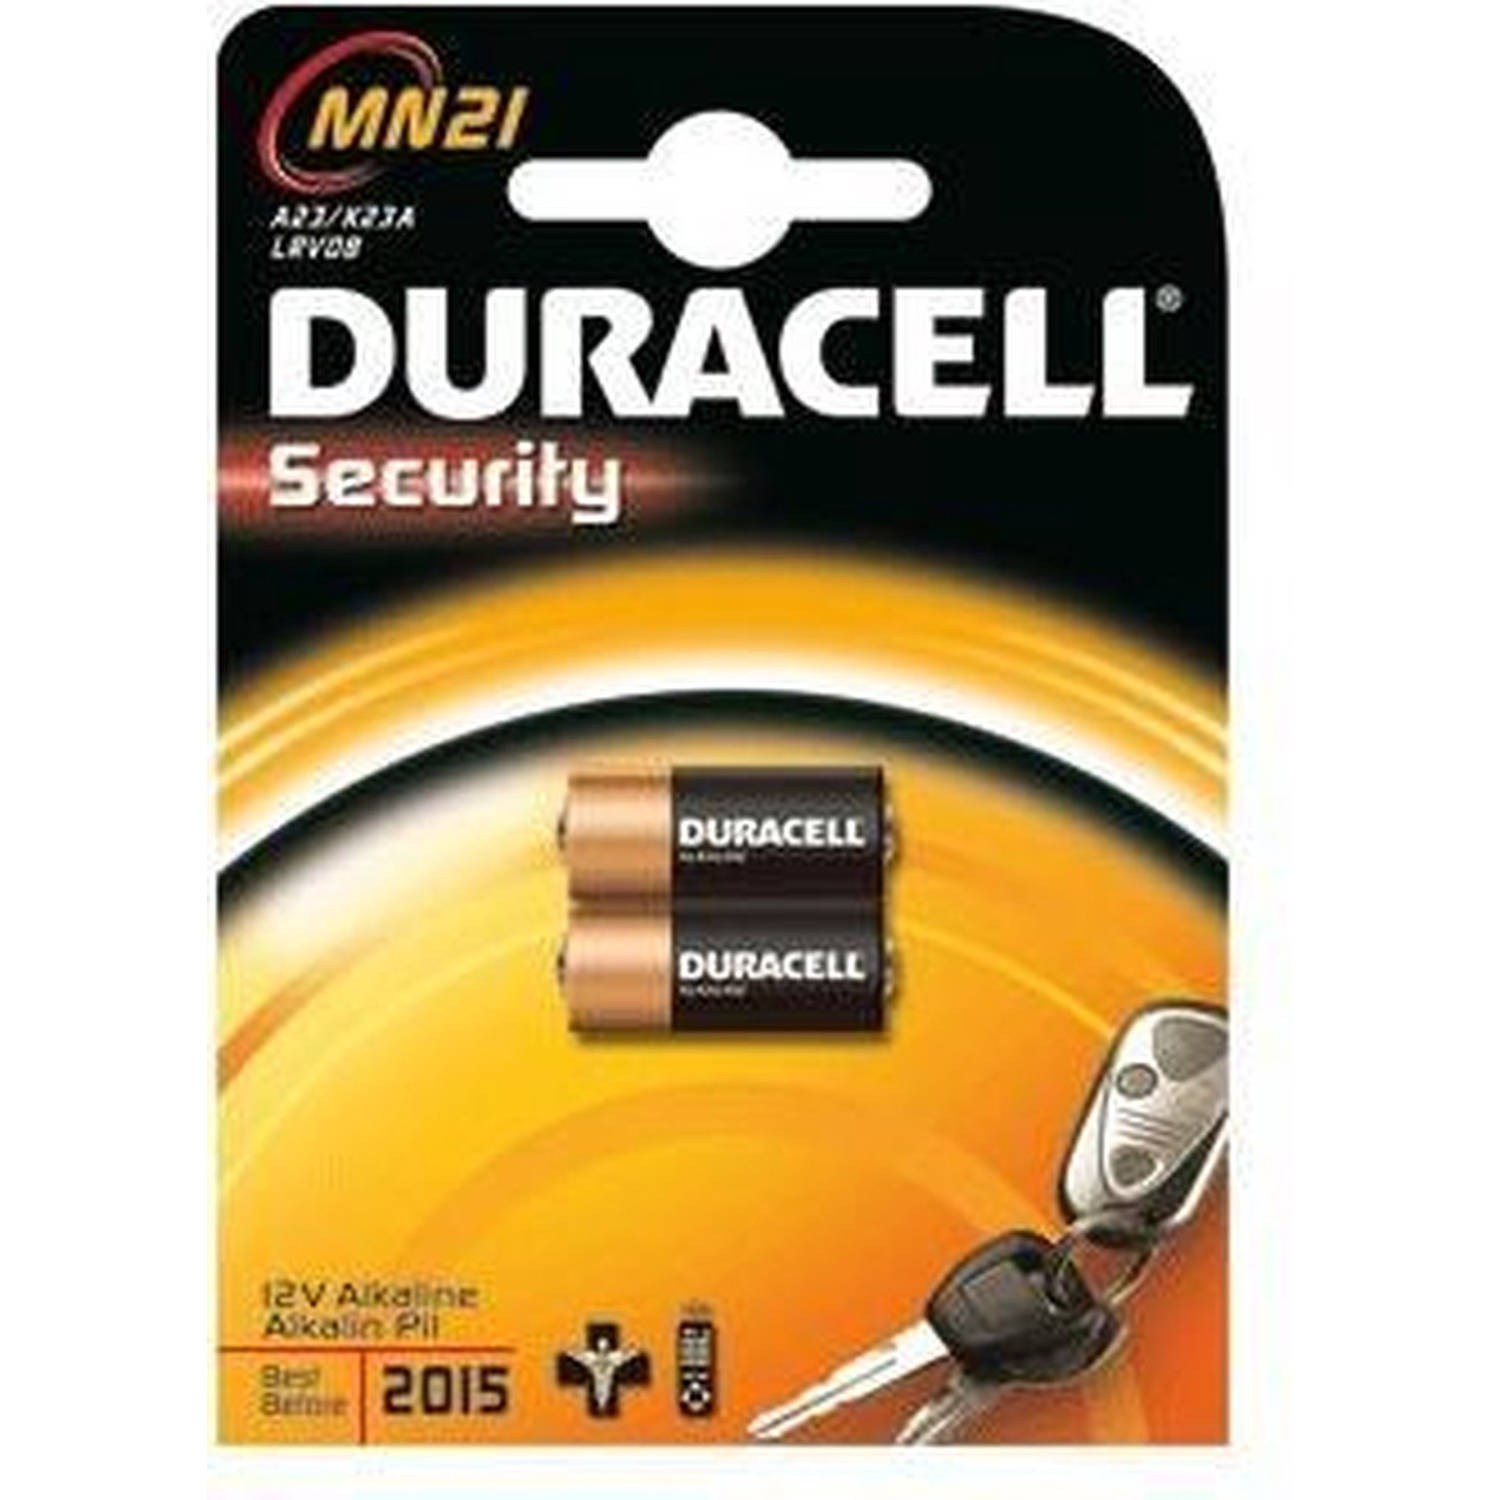 Duracell Reserve Batterij Mn21 12 Volt (2 Stuks)